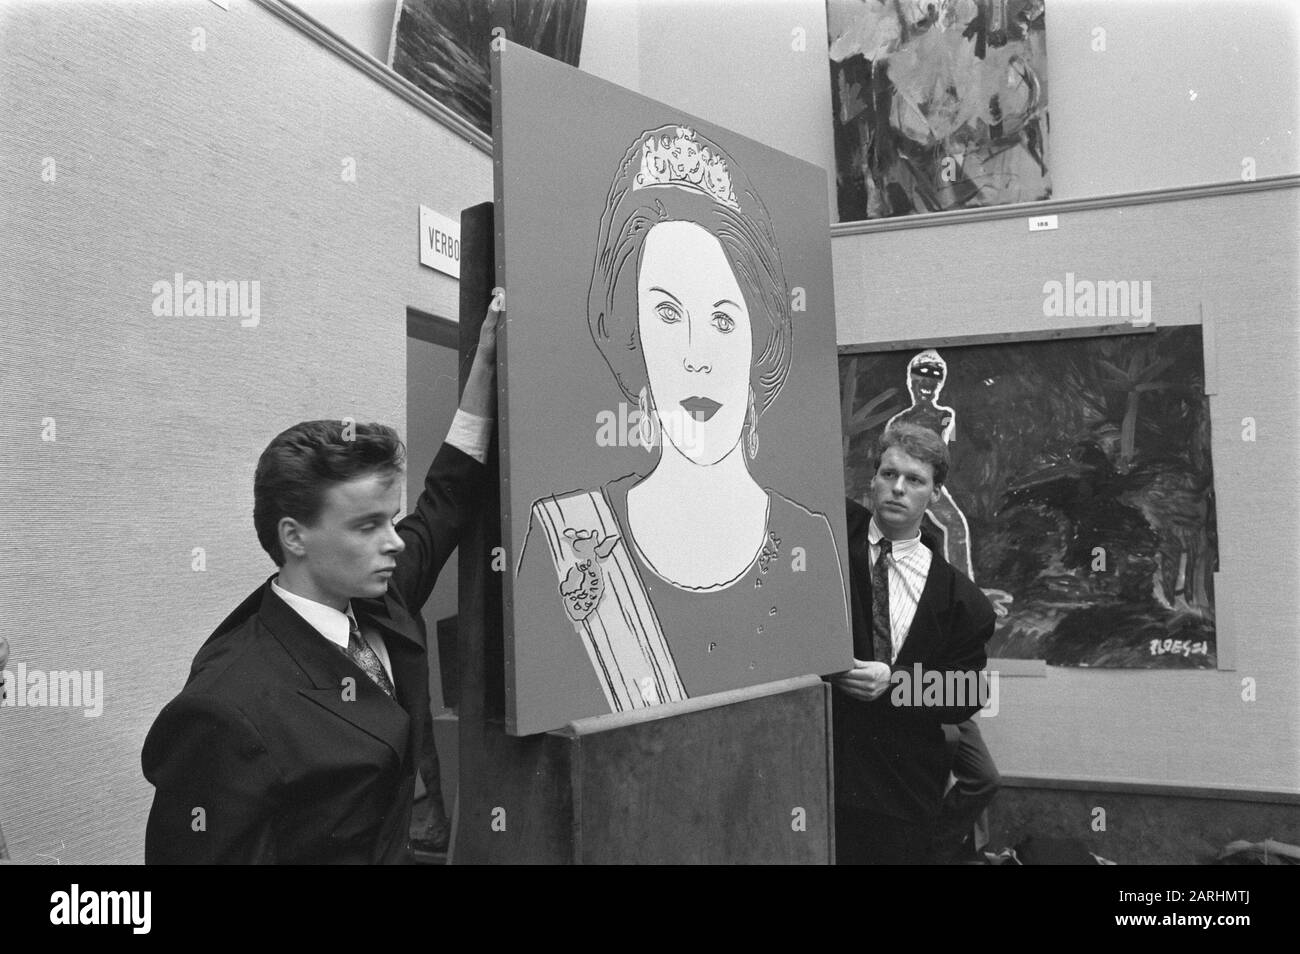 Vente aux enchères acrylique peinture par Andy Warhol par la Reine Beatrix Date: 21 mars 1988 mots clés: Peintures, ventes aux enchères Nom personnel: Andy Warhol, Beatrix, Queen Banque D'Images